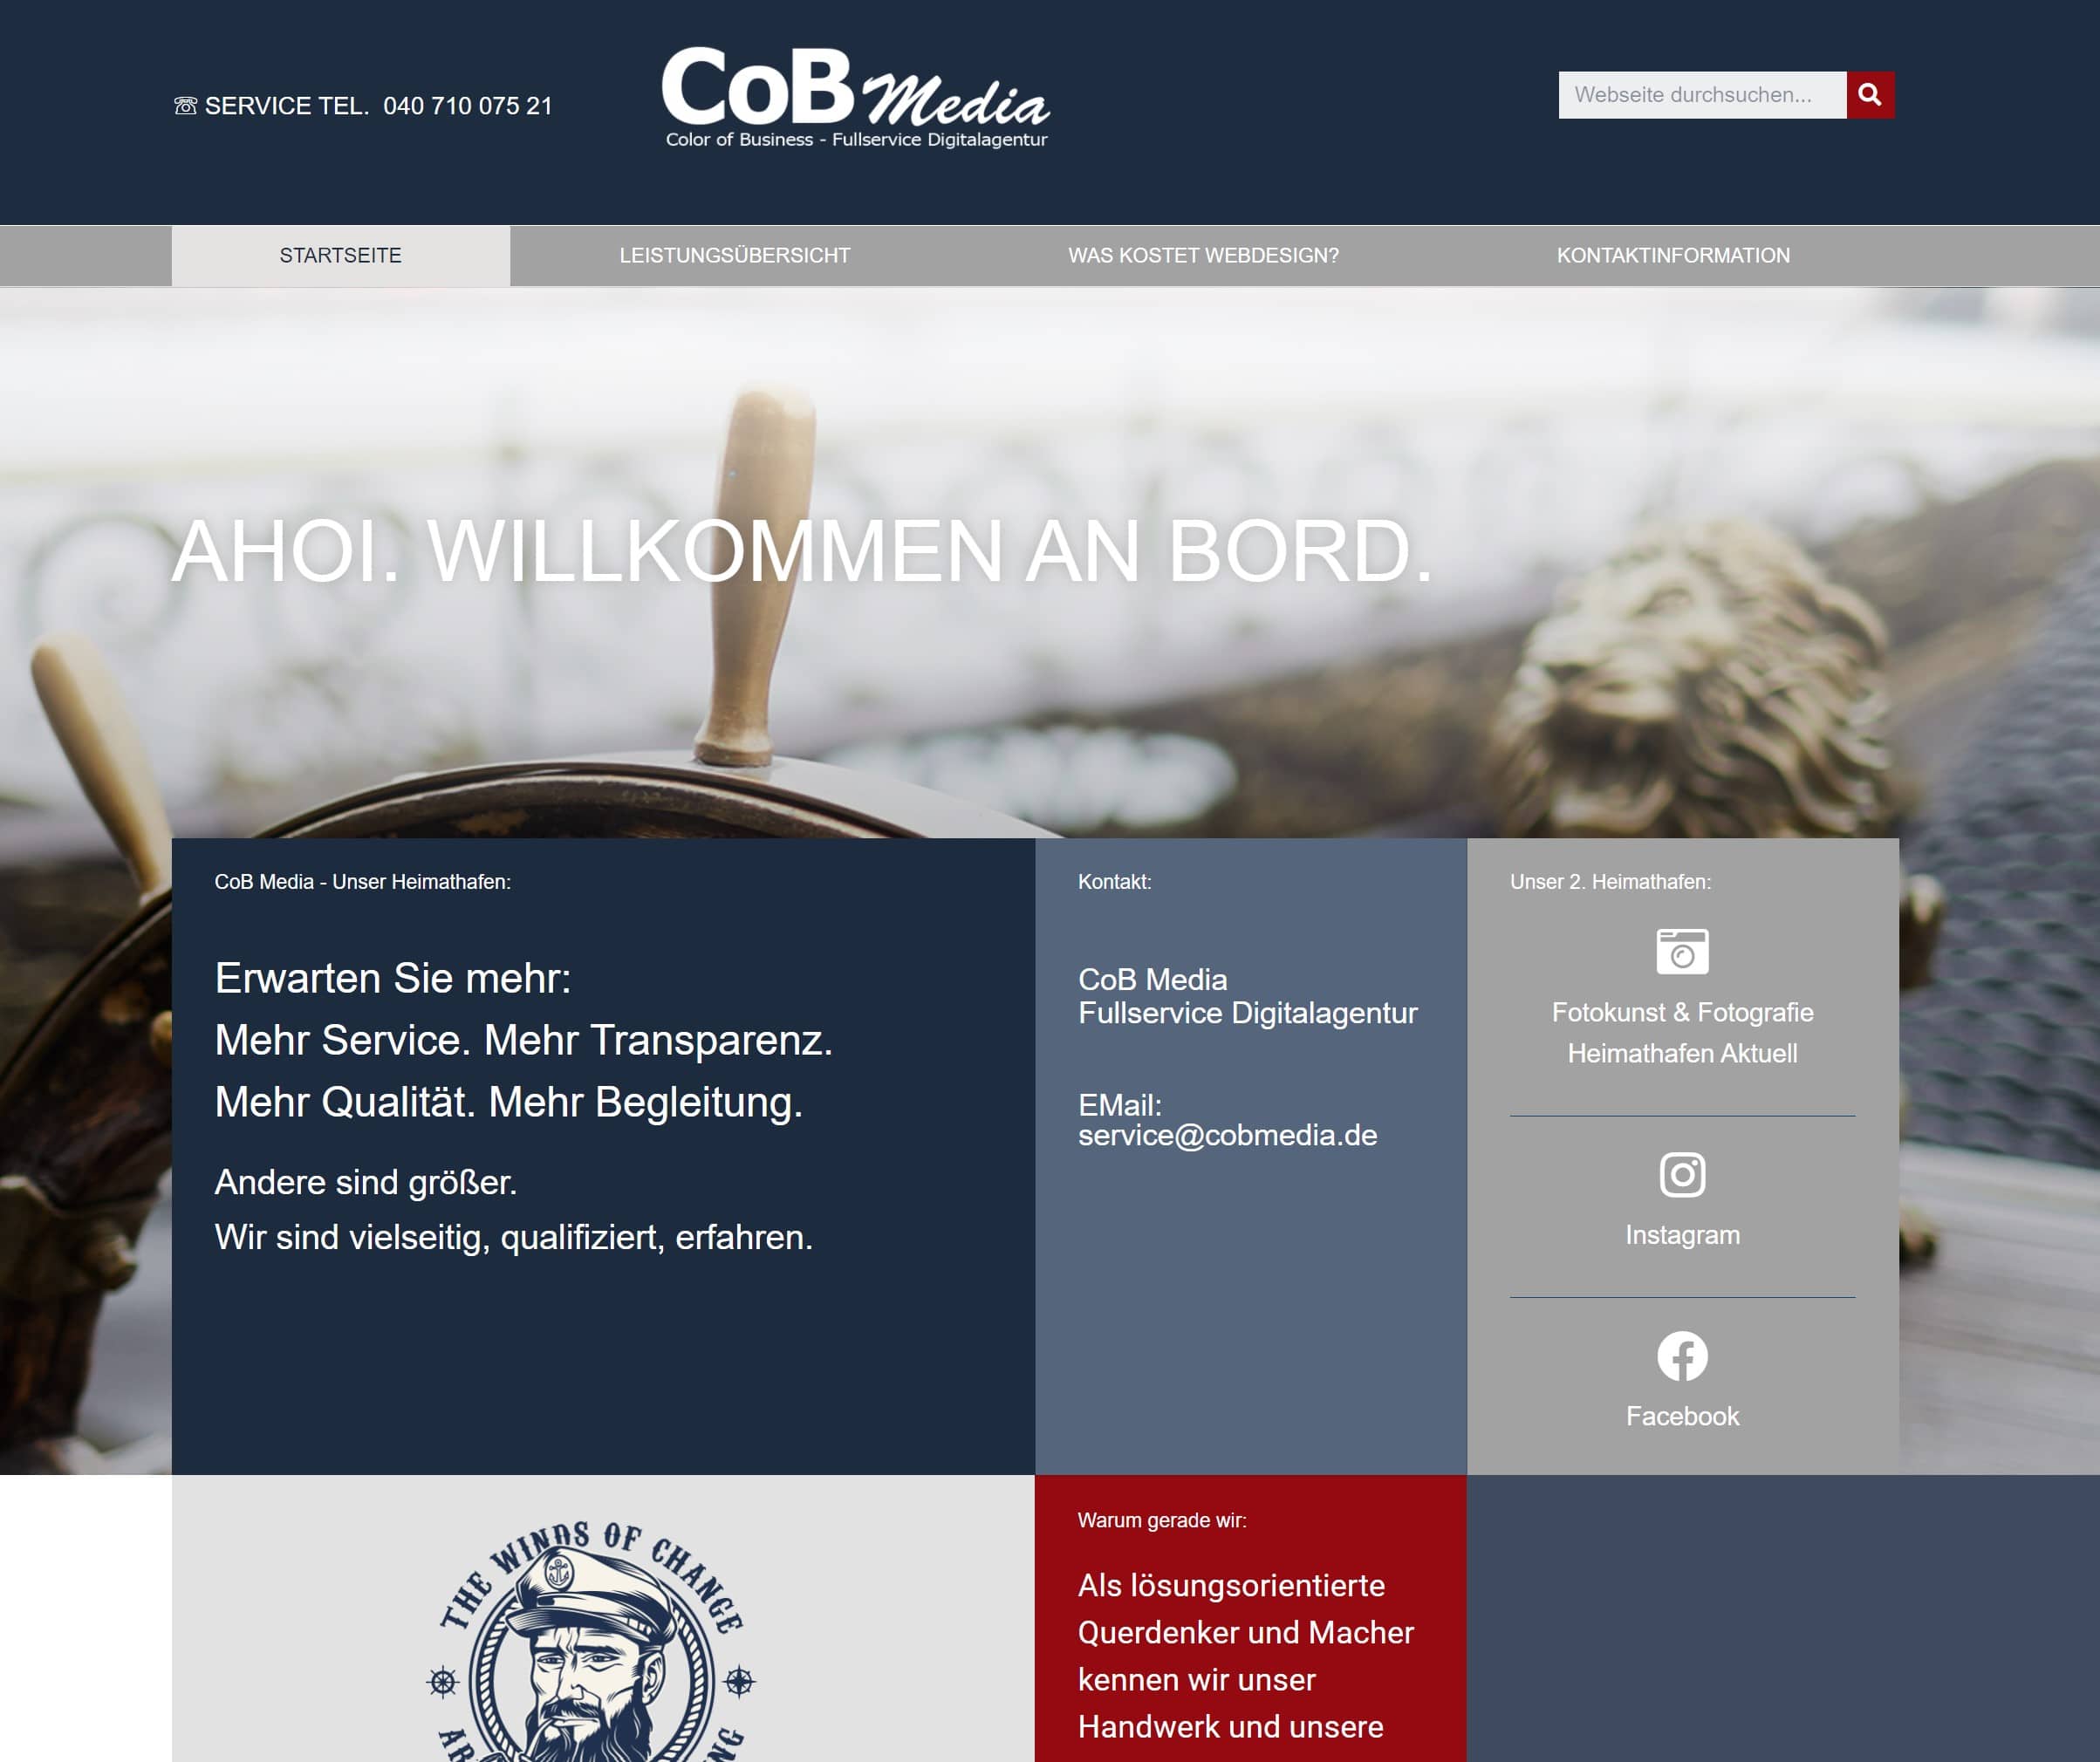 CoB Media - Fullservice-Digitalagentur aus Hamburg